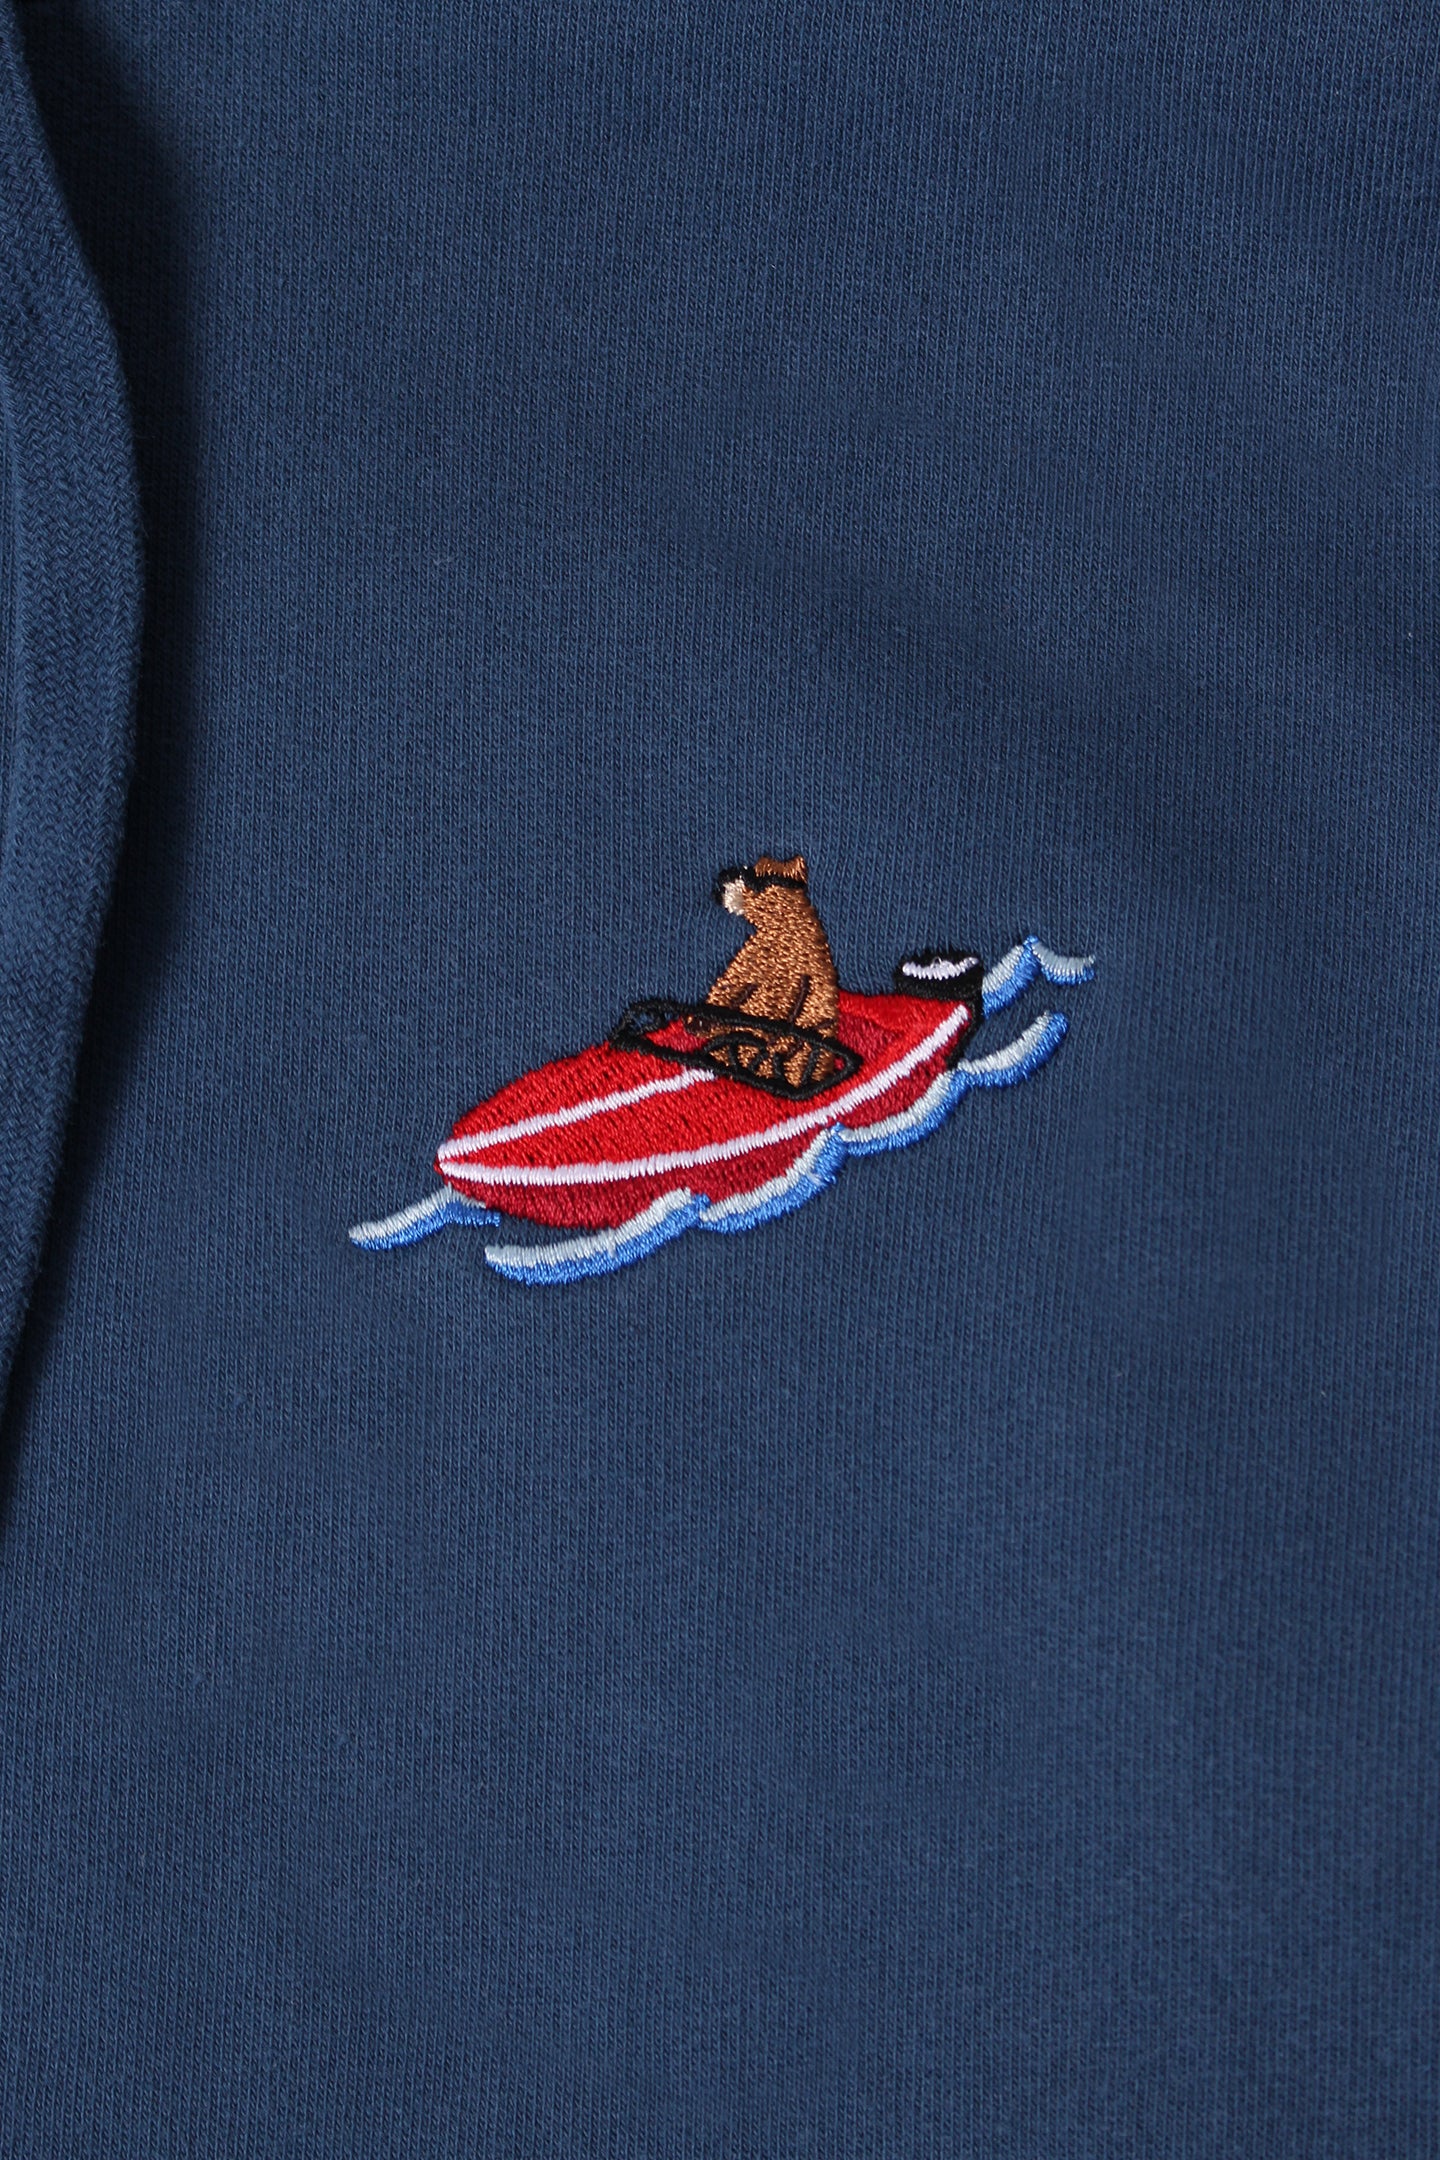 Vintage Pigment Hoodie - Ocean Blue - Boat Bear Embroidery